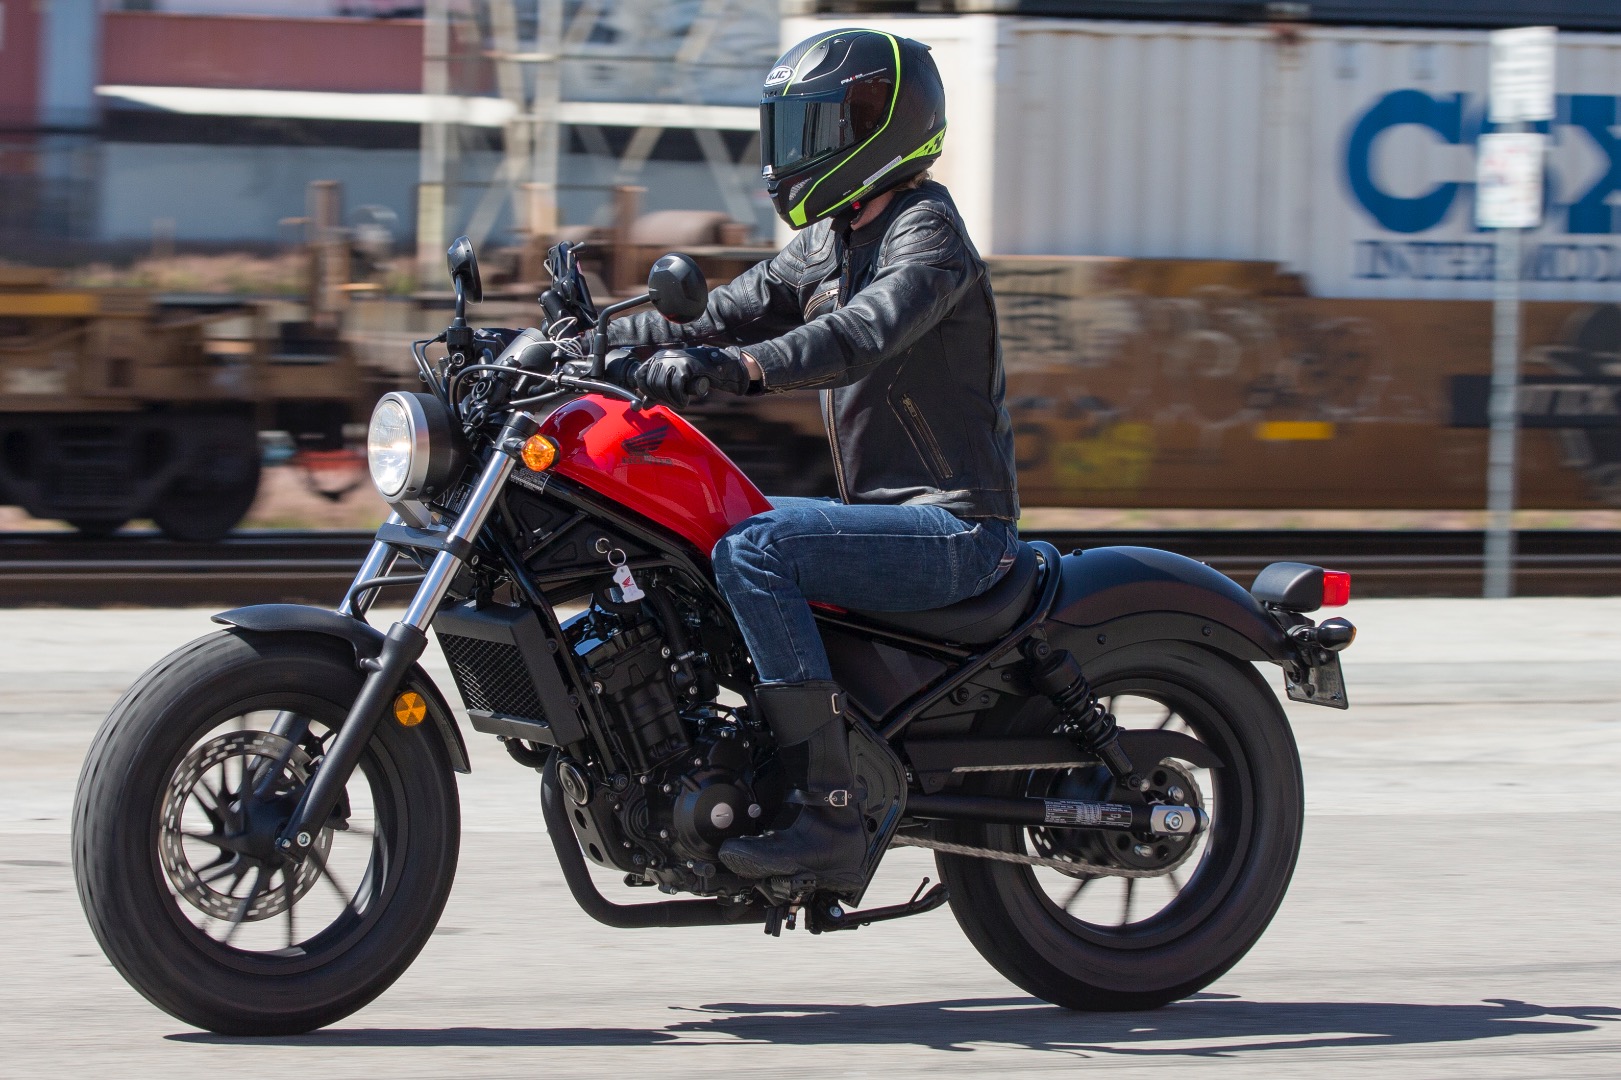 Honda rebel 2020 модельного года – возможно, самый крутой мотоцикл для начинающих